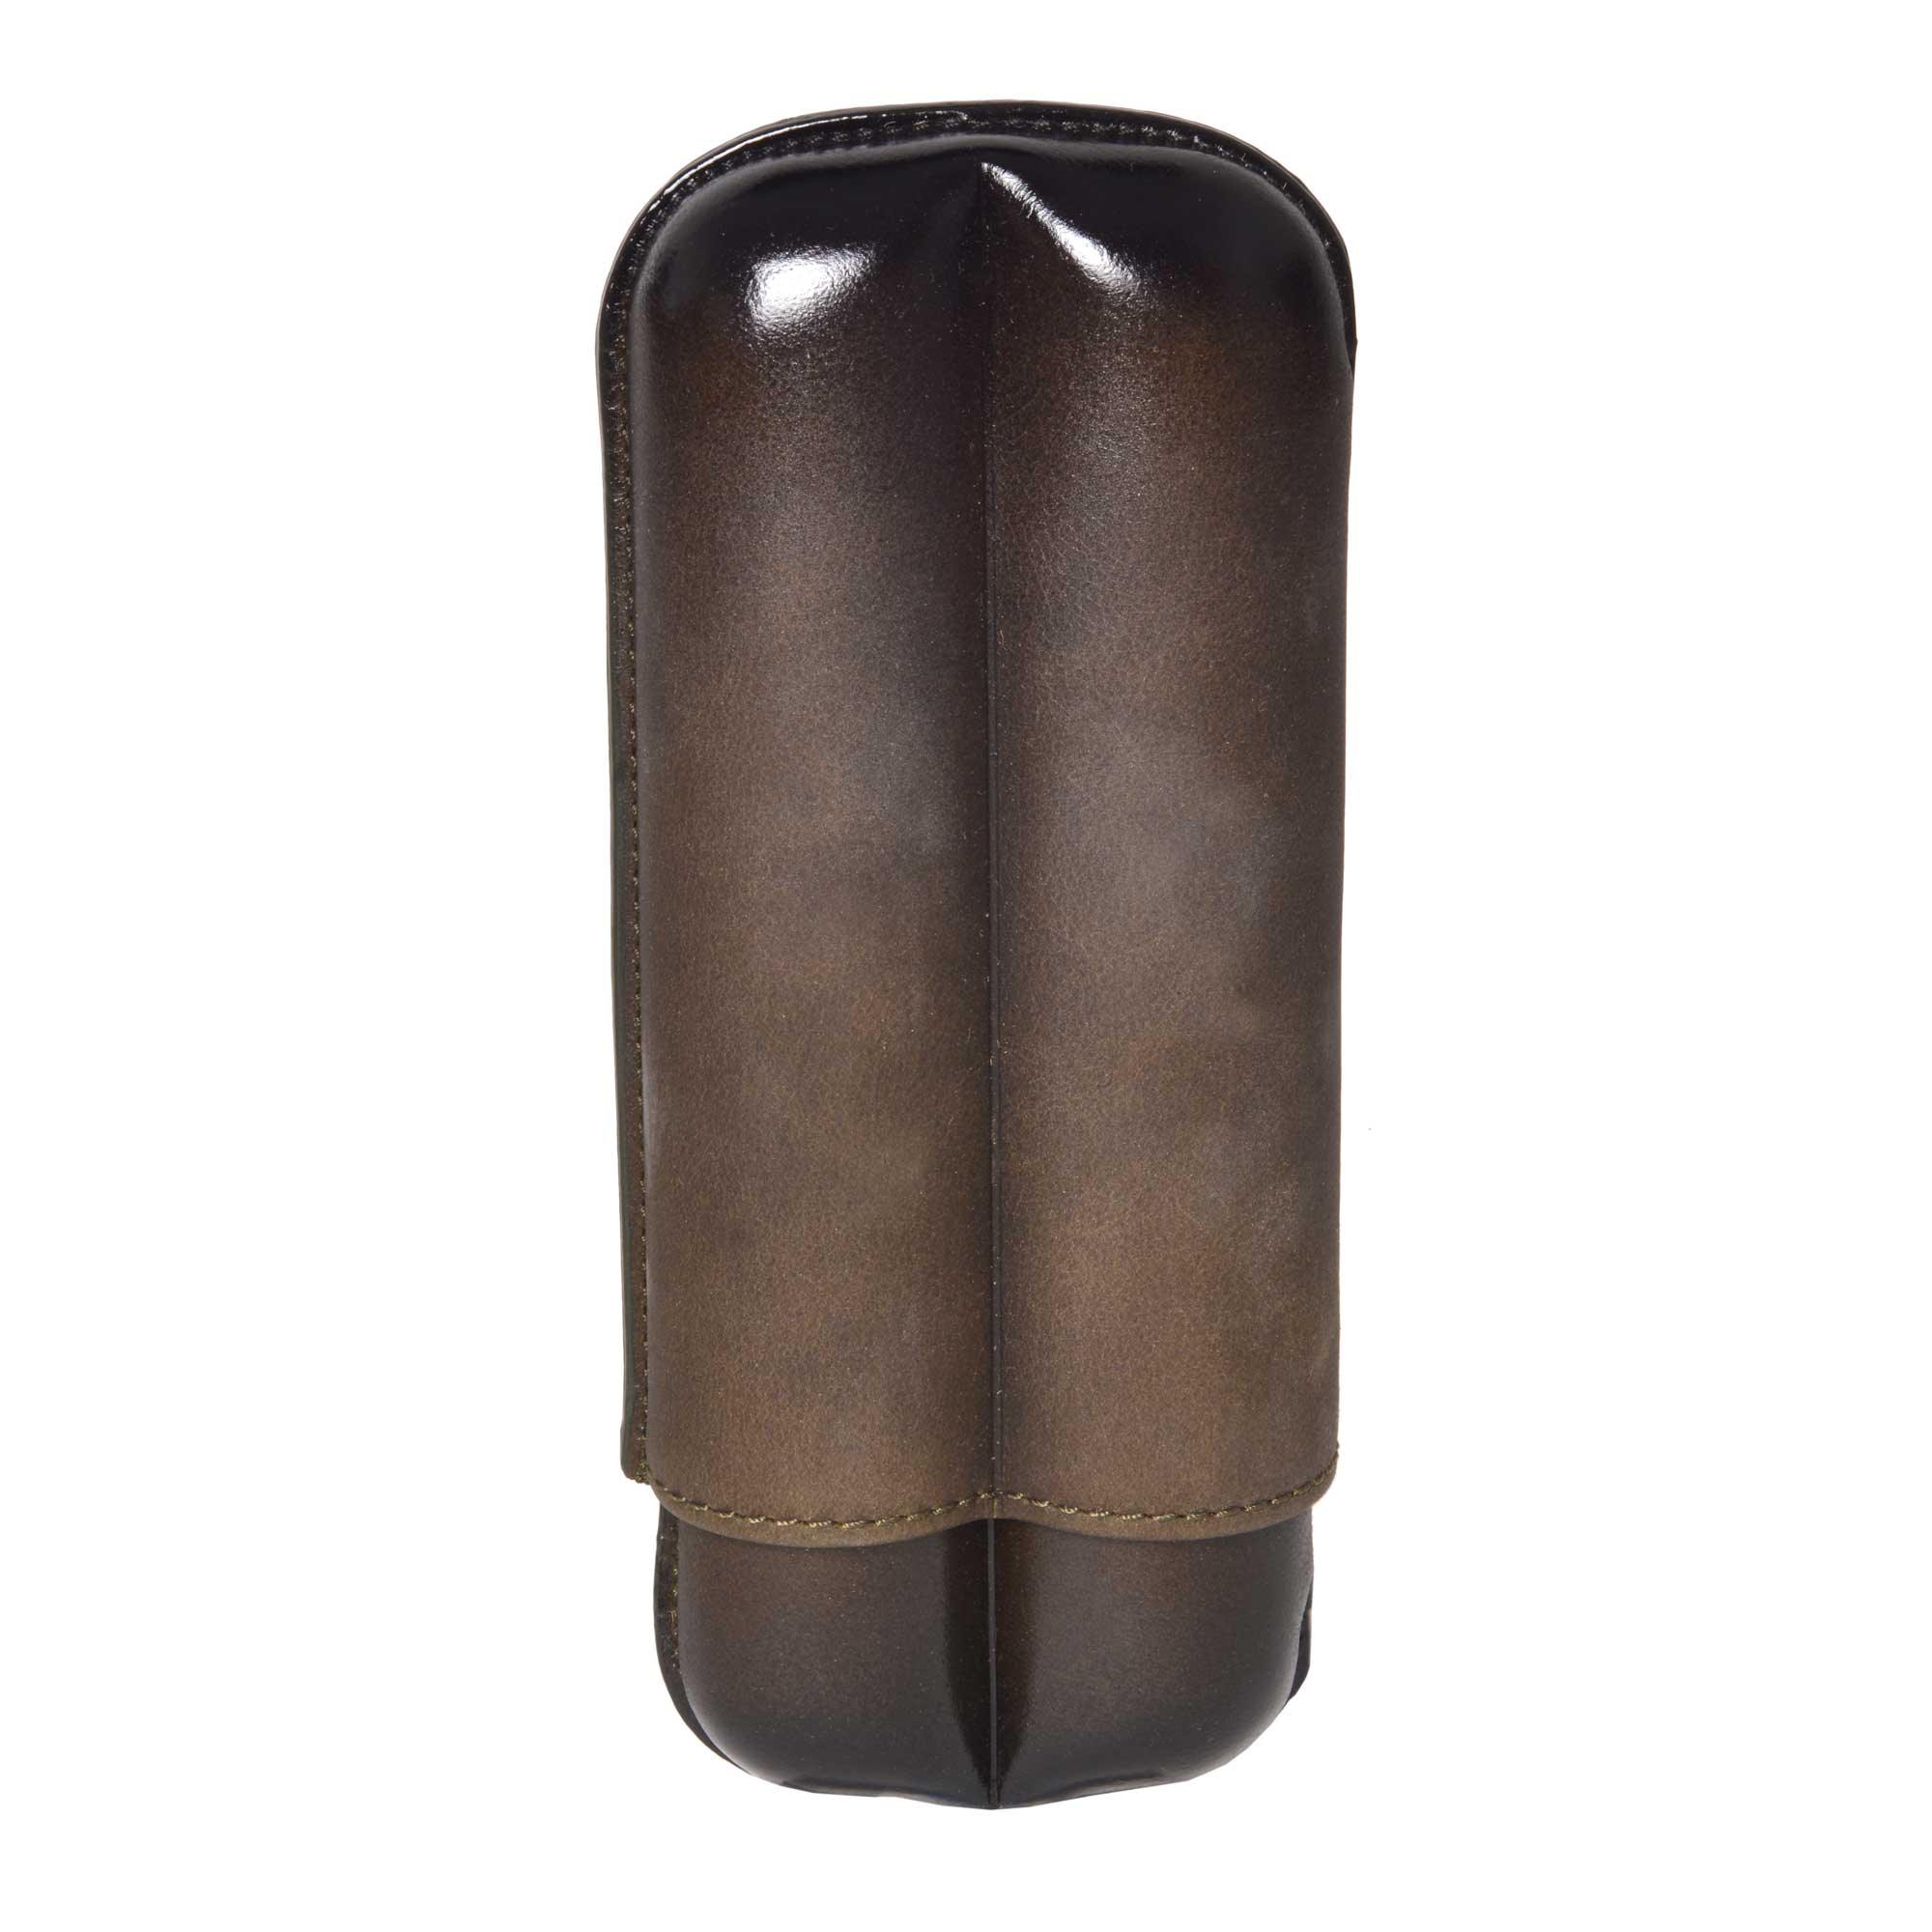 ELIE BLEU "Olive" leather case for 2 cigars (ring 27 mm) - hk.cohcigars